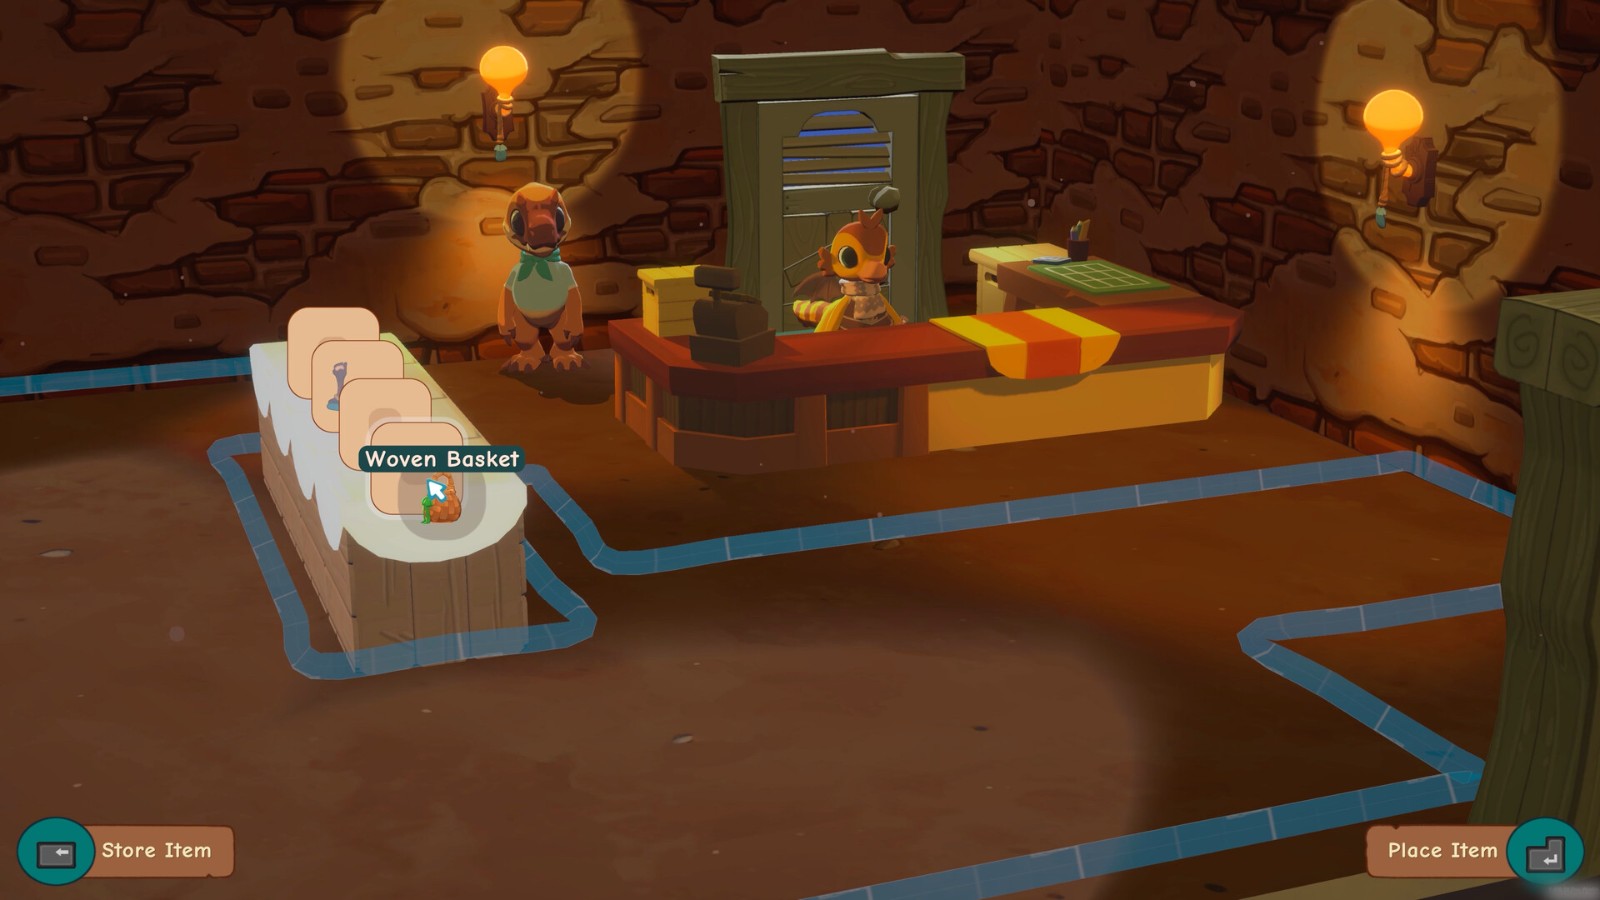 恐龙主题模拟经营游戏《琥珀岛》宣告 将上岸Switch以及PC